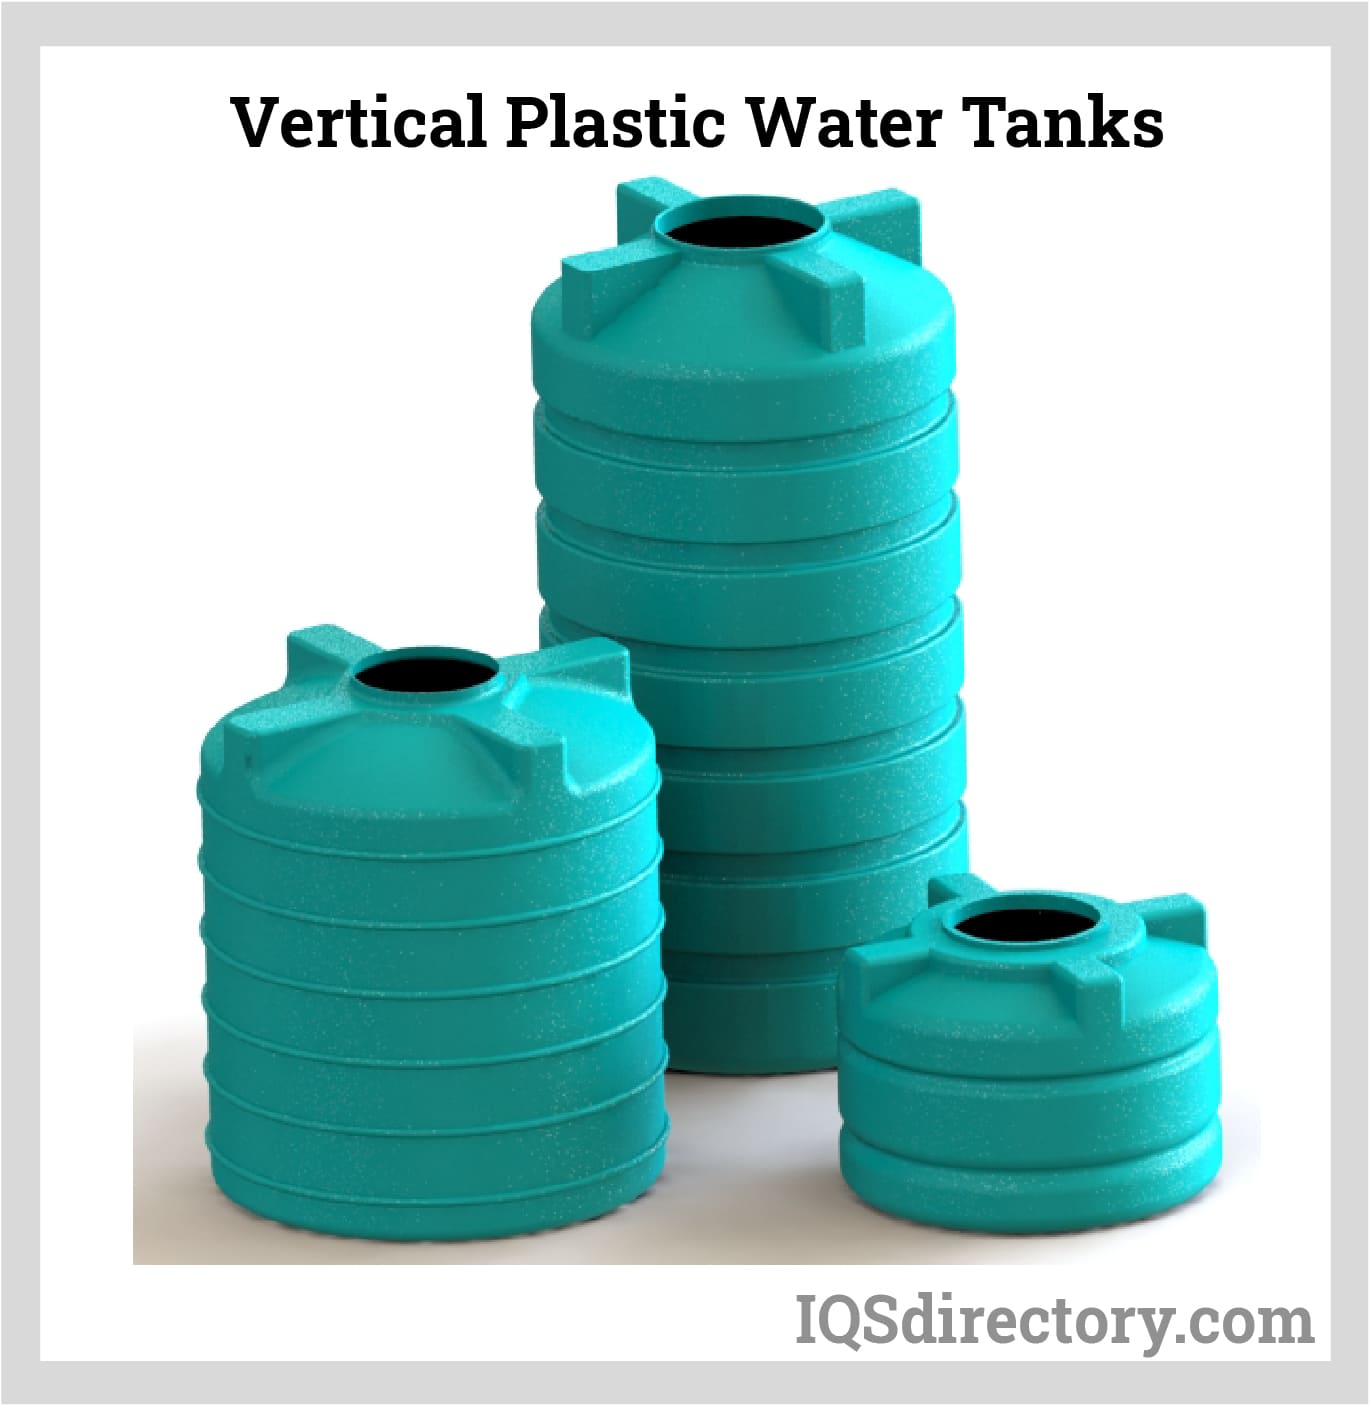 Vertical Plastic Water Tanks